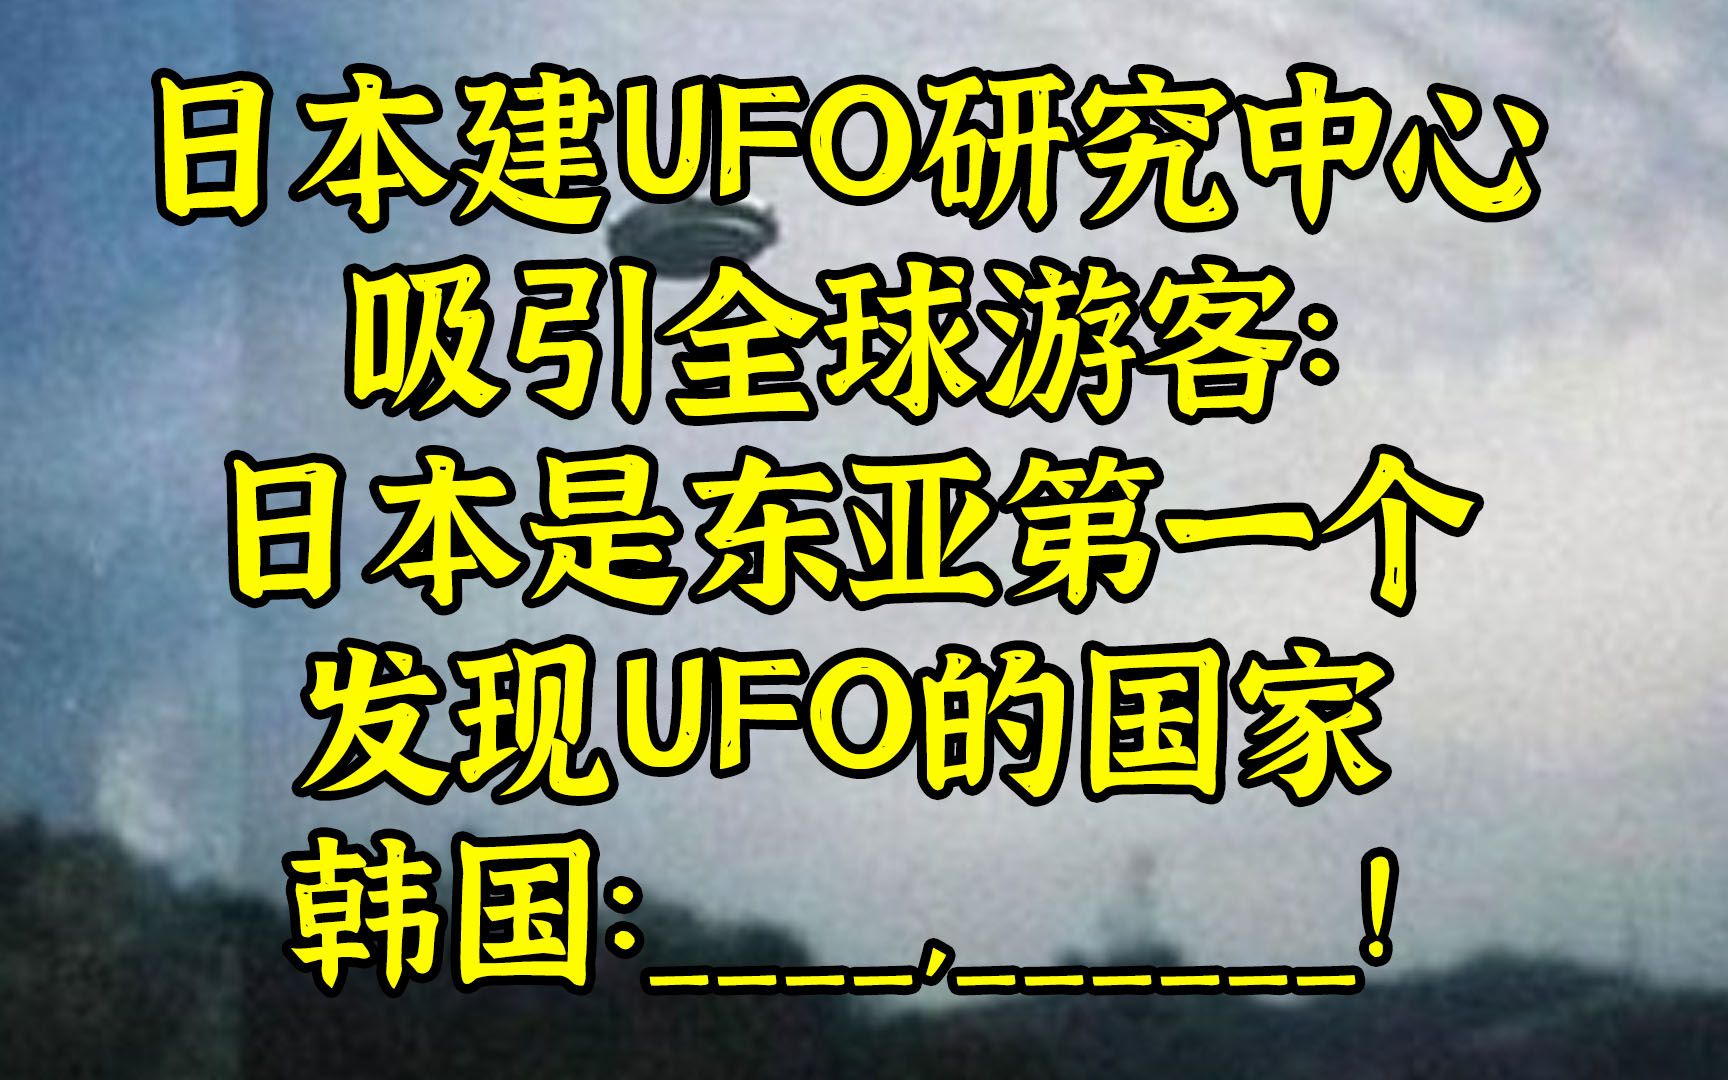 日本建UFO研究中心，韩日就谁最先发现UFO坦率交流